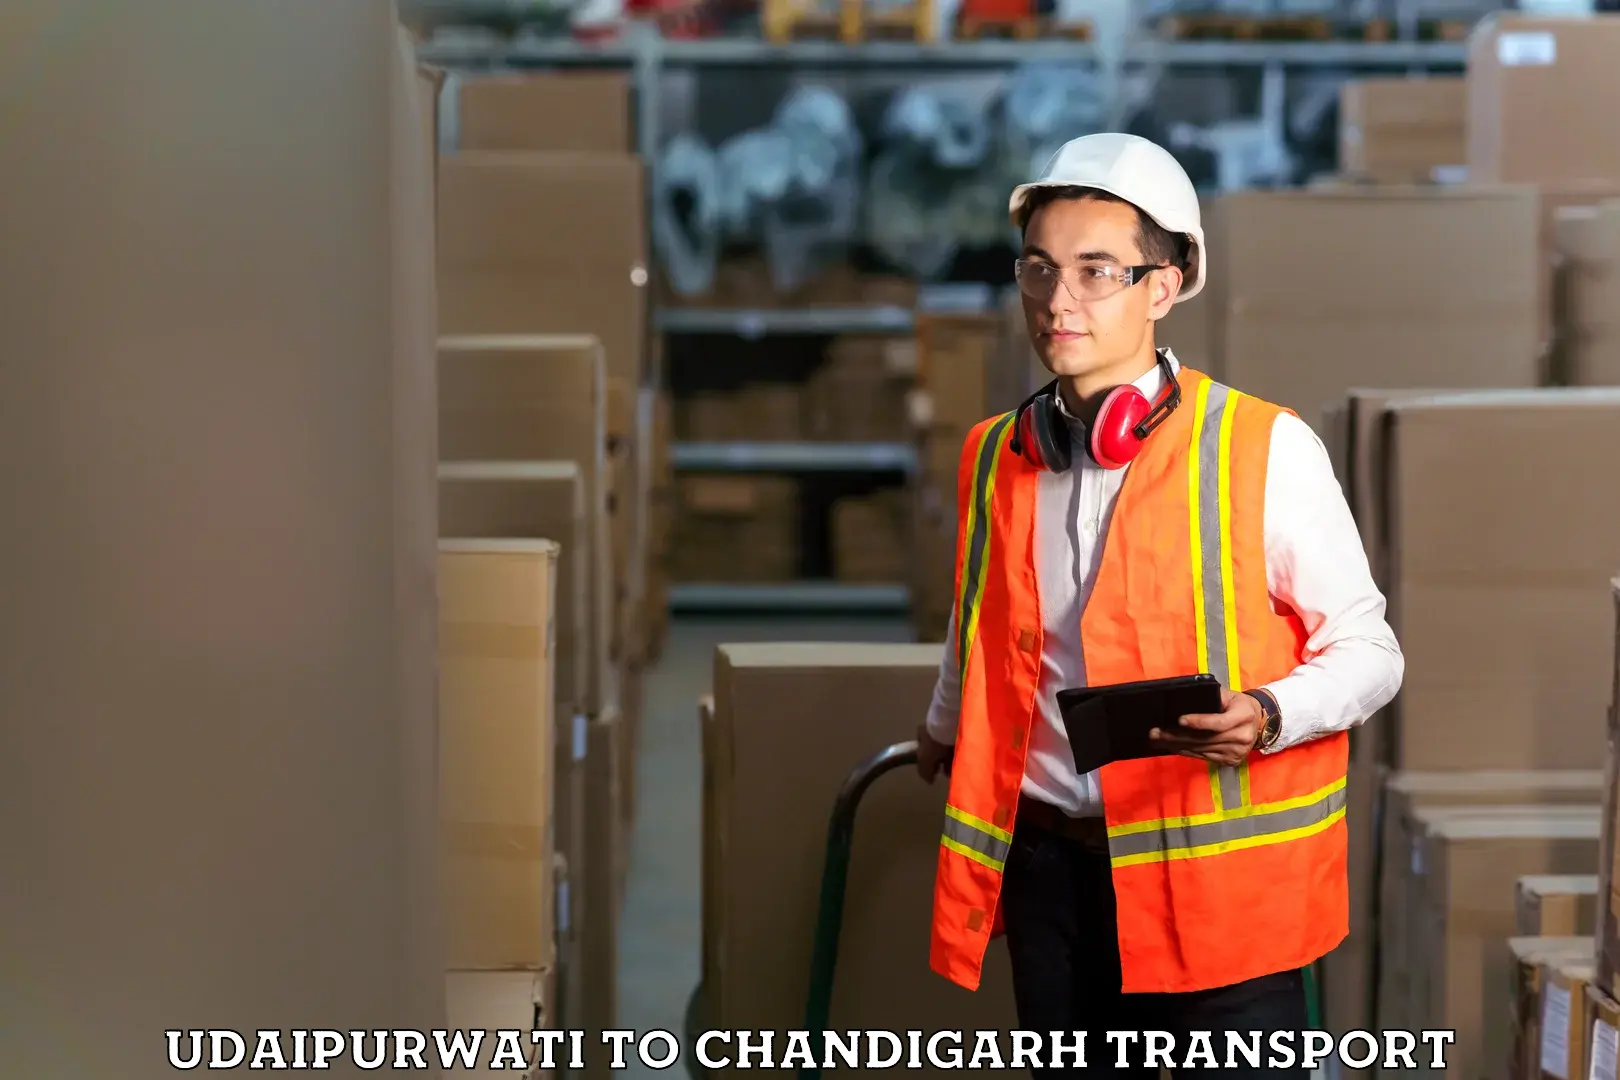 International cargo transportation services Udaipurwati to Chandigarh